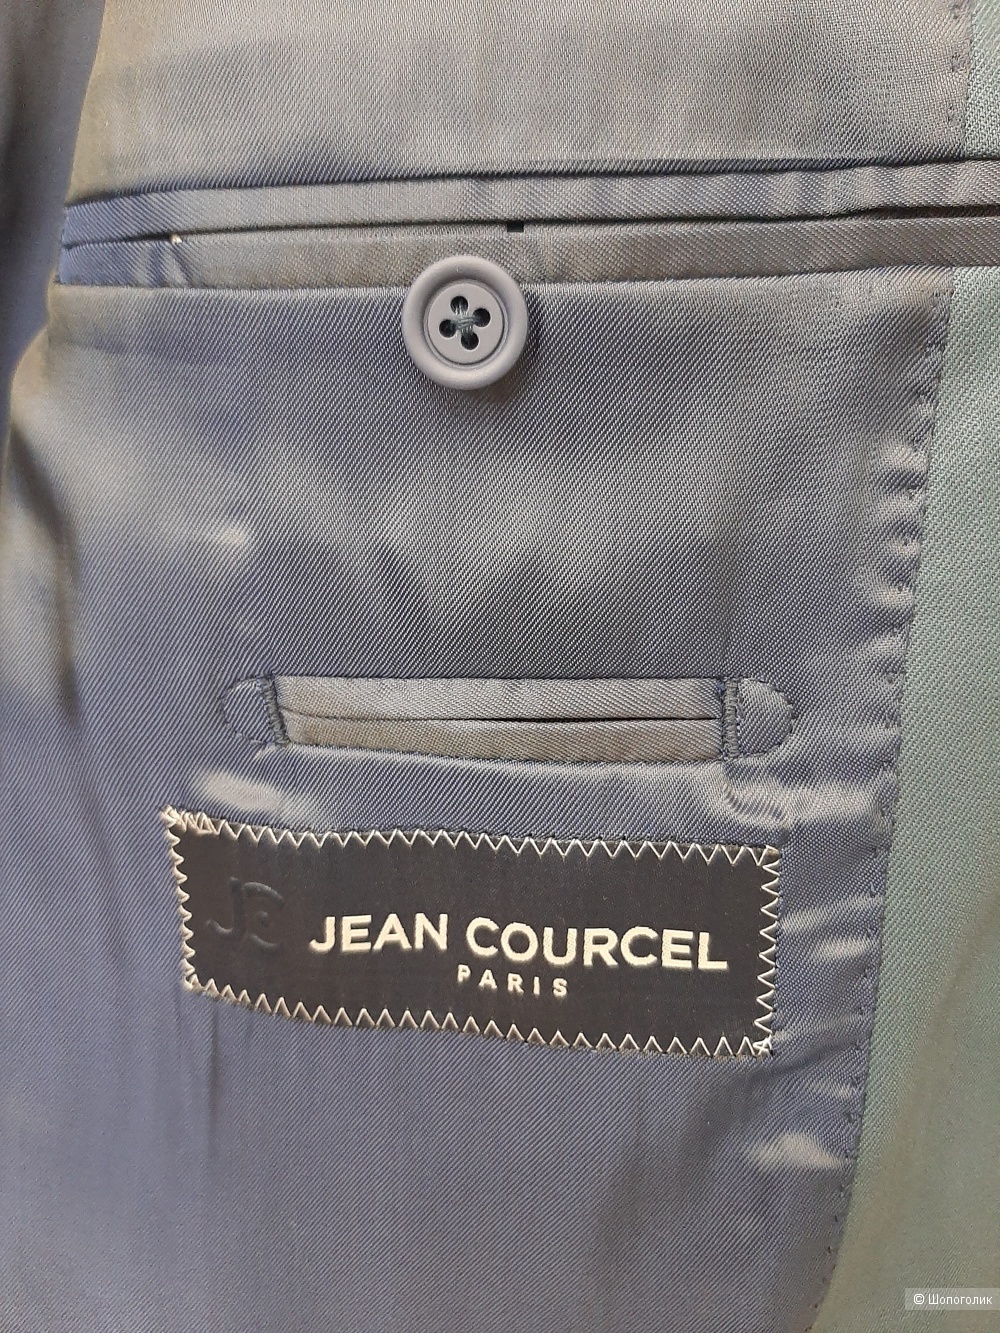 Мужской пиджак Jean Courcel Paris, 52-54